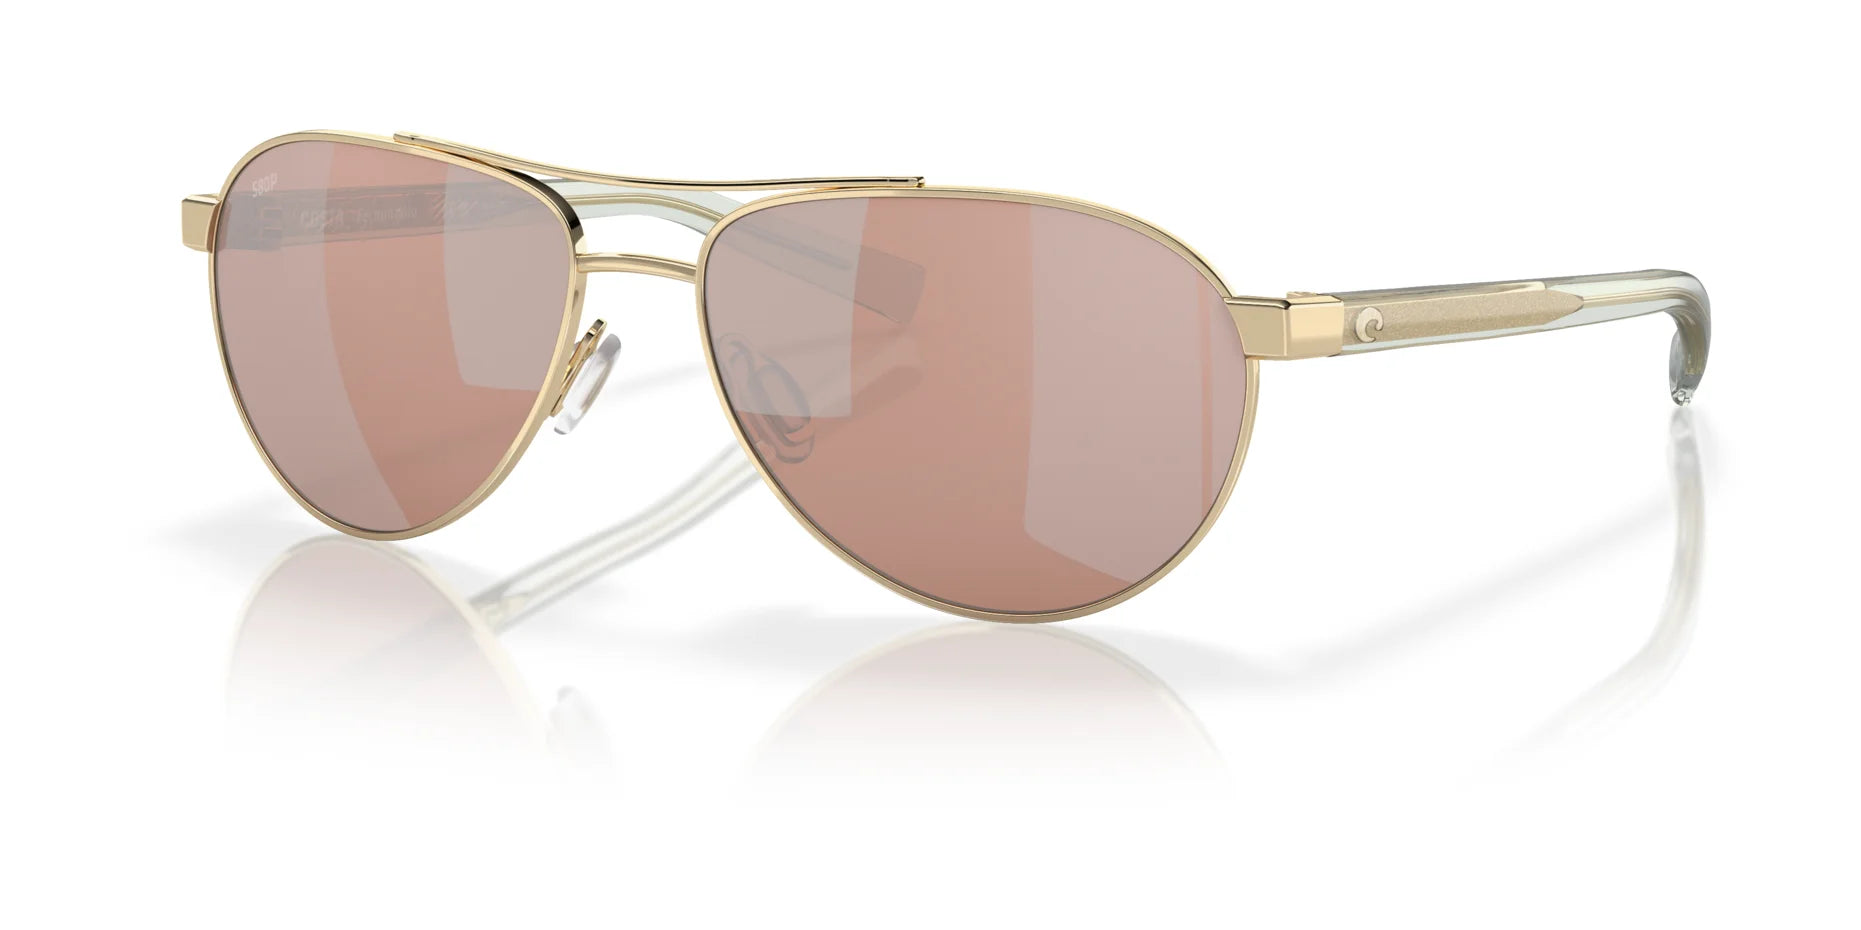 Costa FERNANDINA 6S4007 Sunglasses Shiny Gold / Copper Silver Mirror